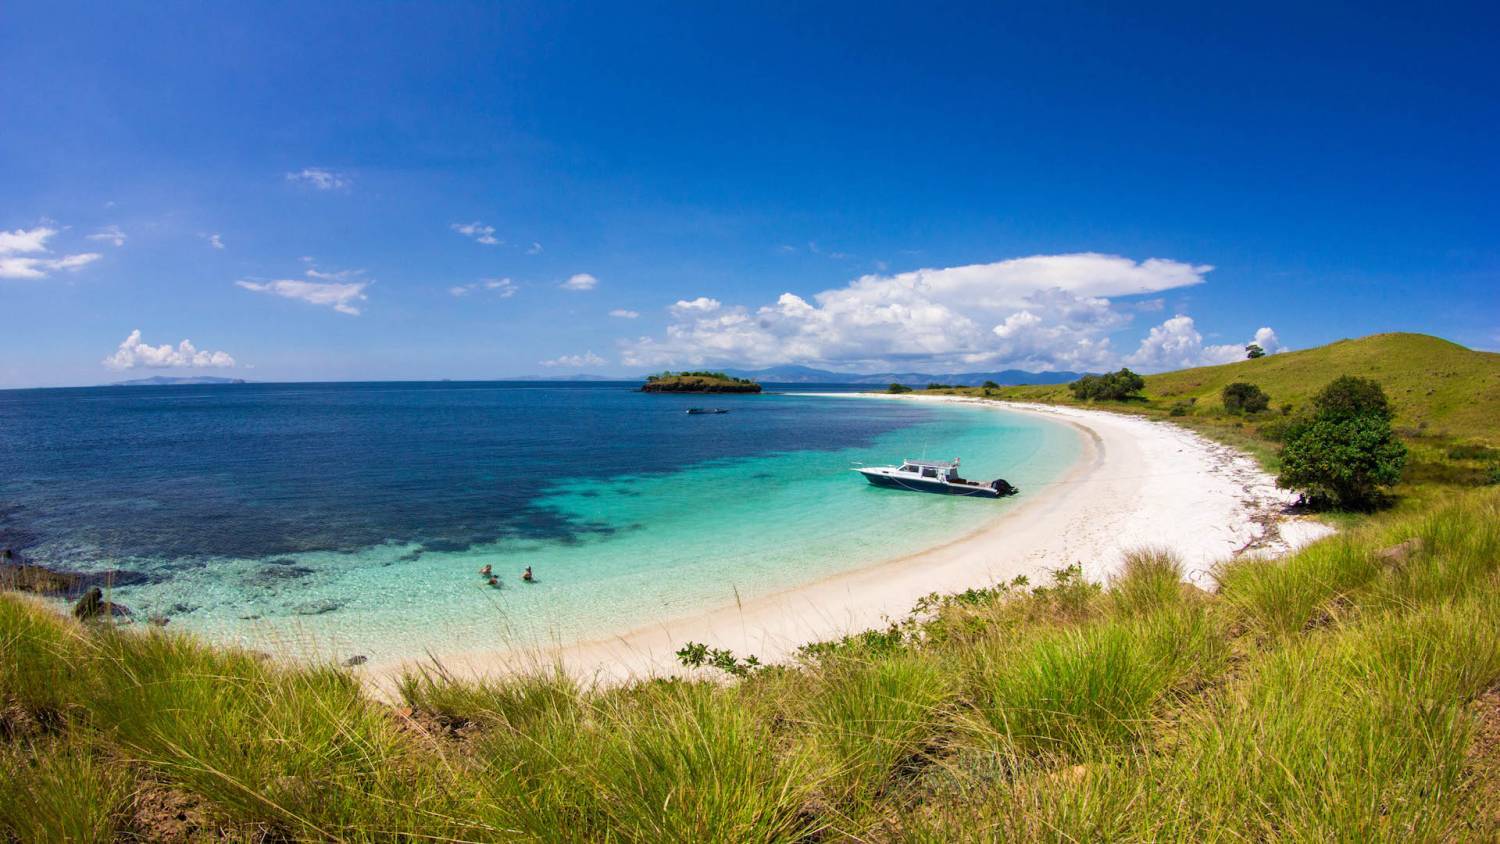 【印尼】Kalimaya Dive Resort  6日5夜潛水自由行套票